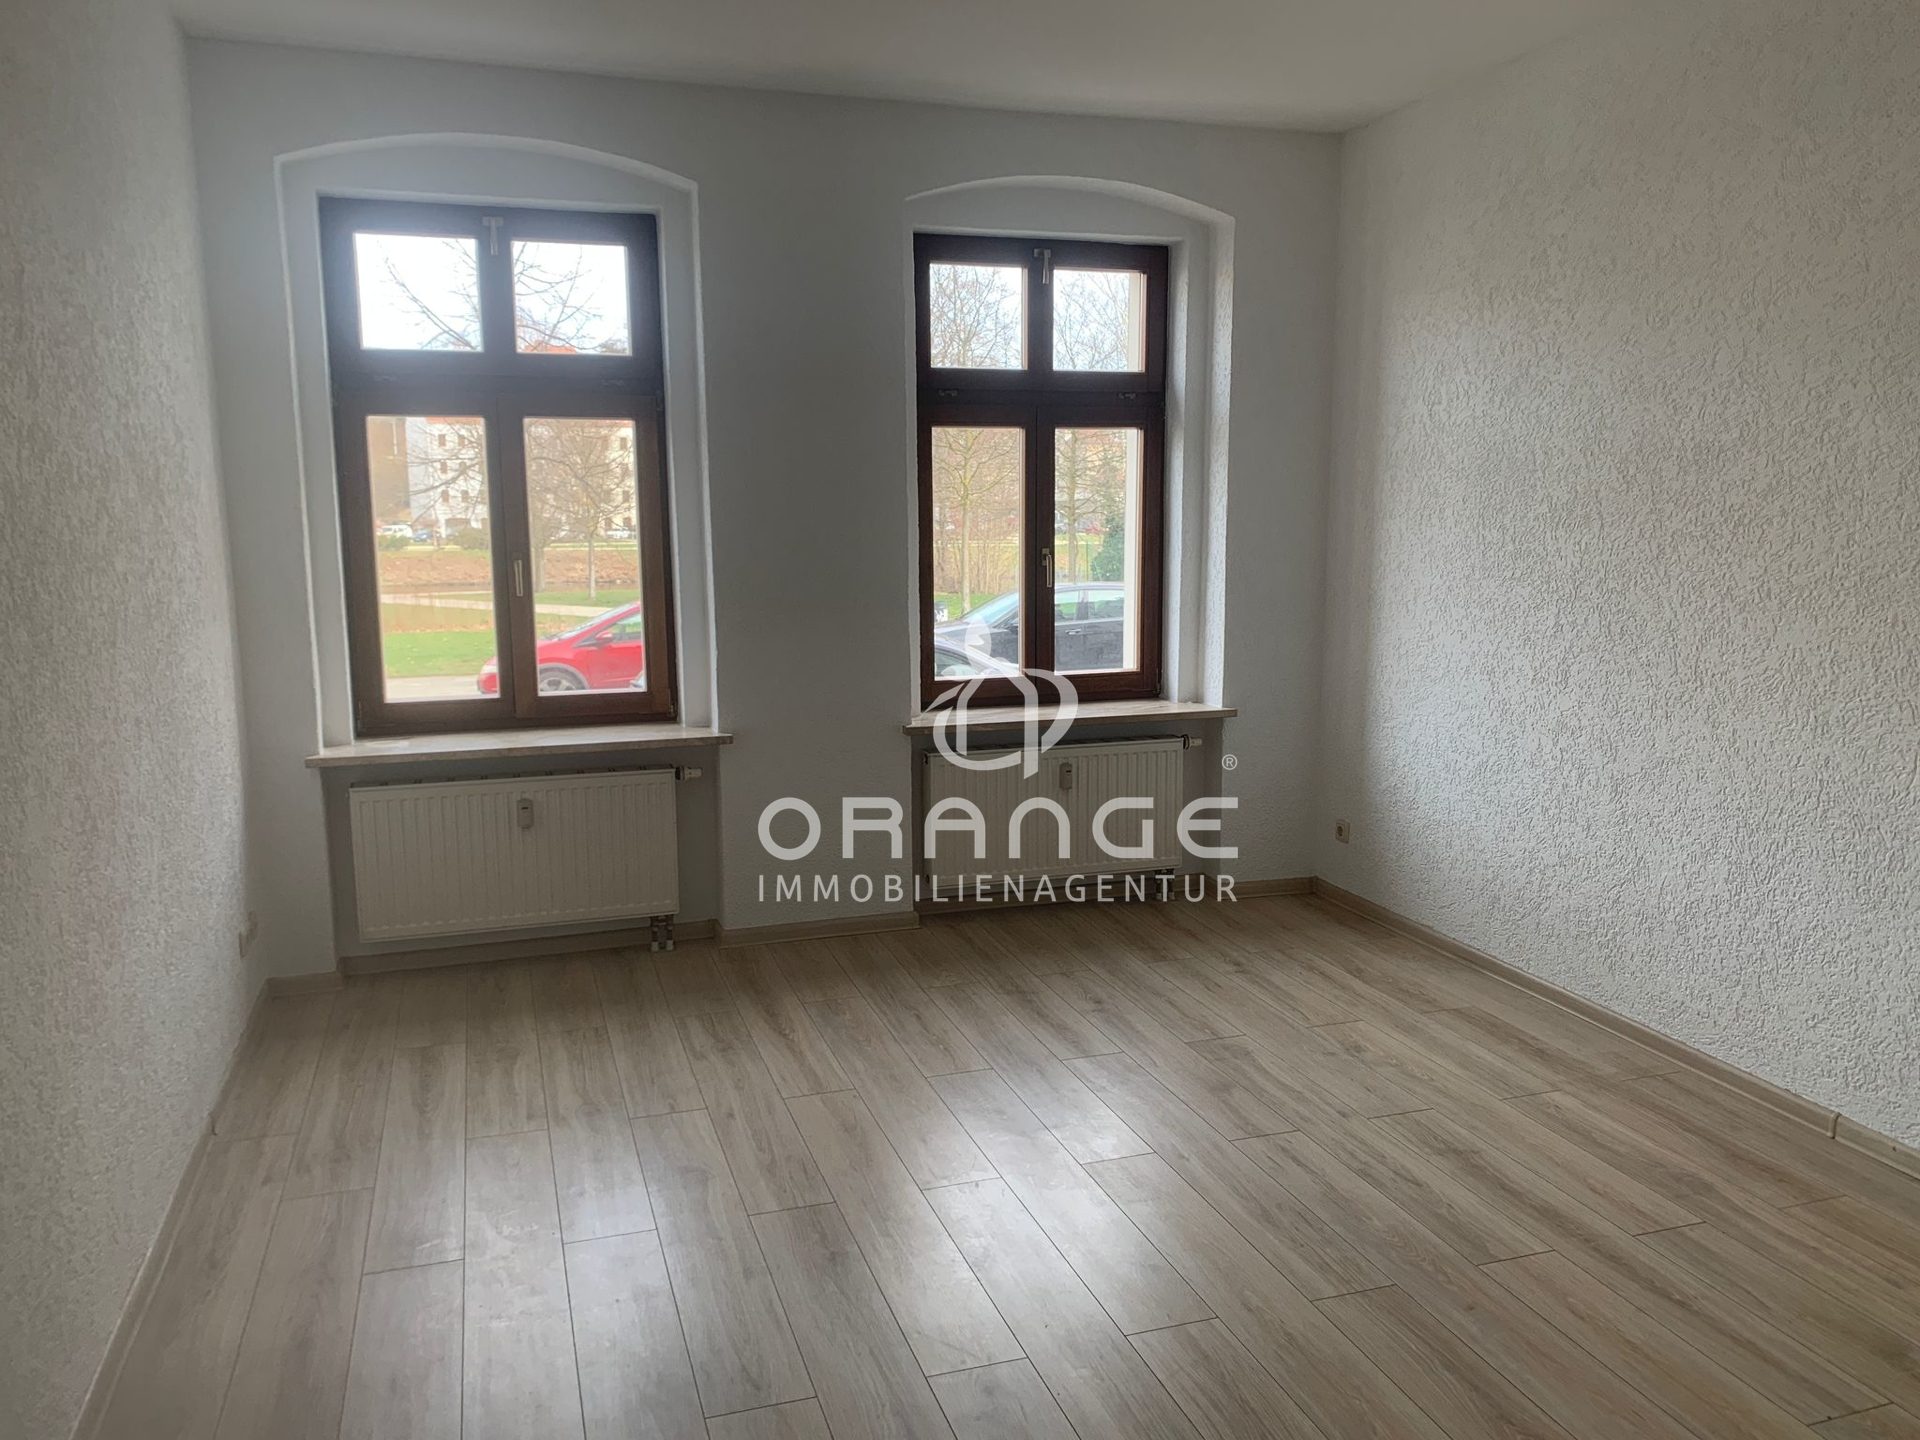 Immobilienangebot - Görlitz - Alle - ***Top Anlage mit Balkon und Neisse Blick***